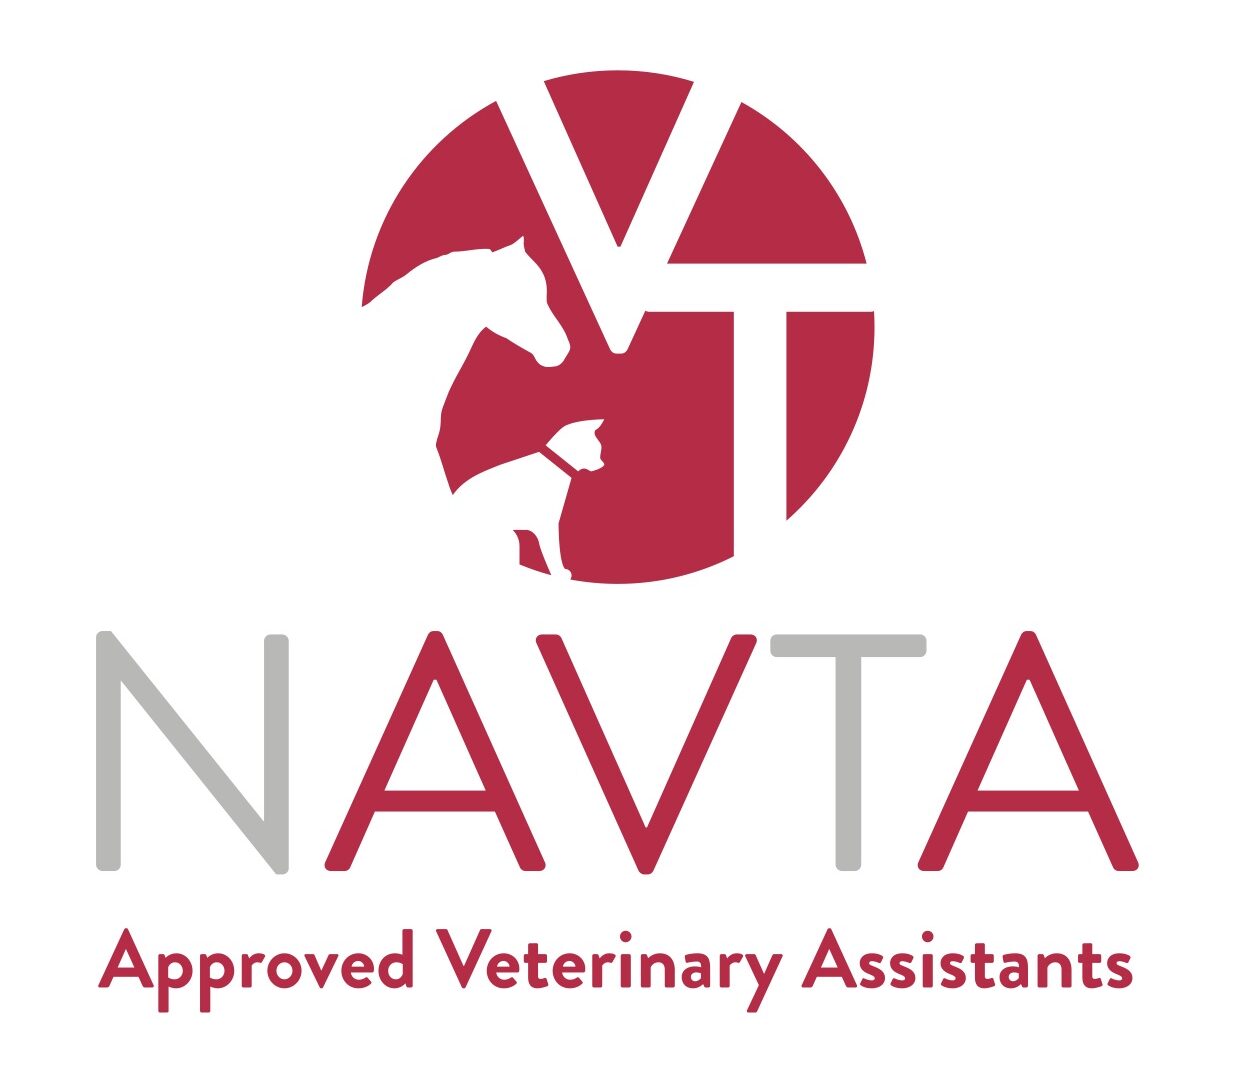 NAVTA Logo AVA aspect ratio 563 492